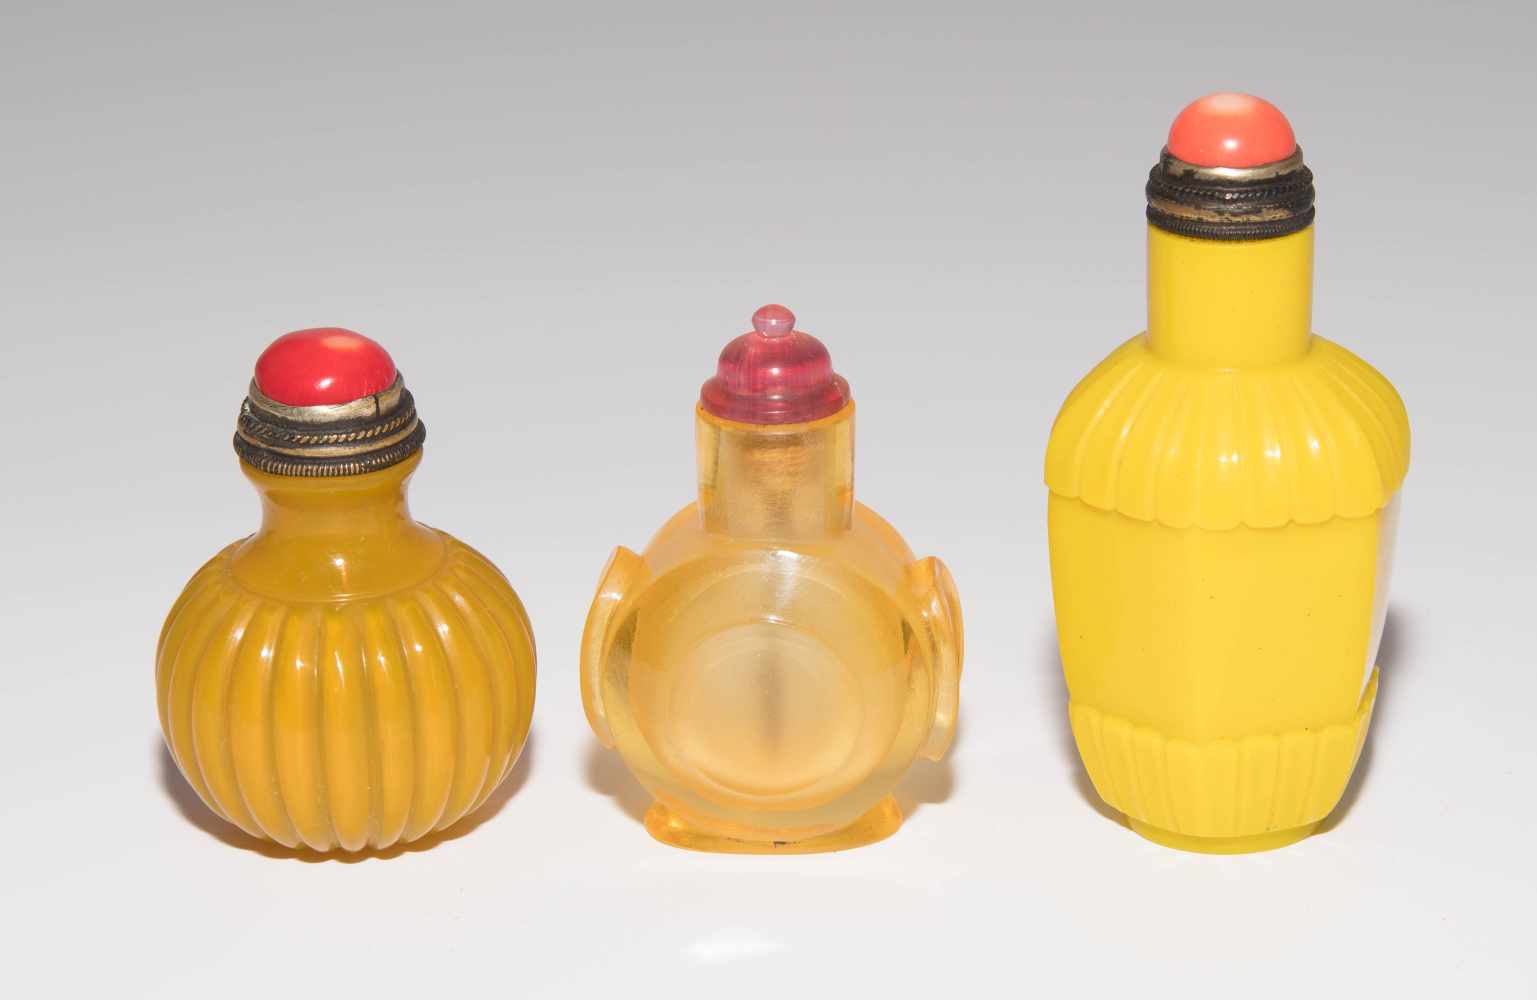 7 Glas Snuff BottlesChina. Halbtransparentes bis opakes Glas in verschiedenen Gelbtönen. H 5–8 cm. - Image 3 of 21